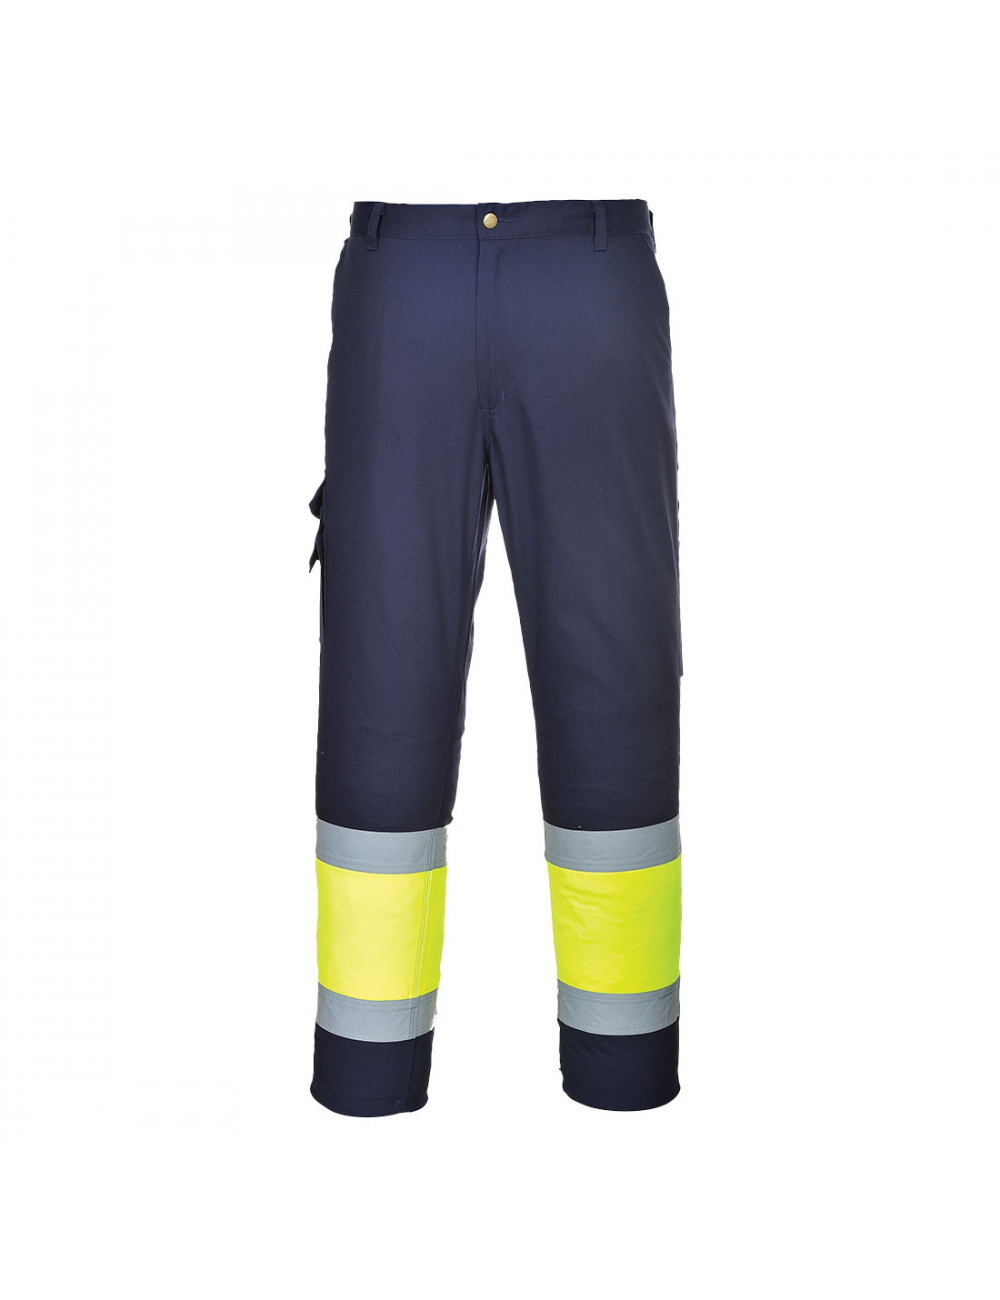 Spodnie bojówki dwukolorowe z elementem odblaskowym żółto/granatowy Portwest